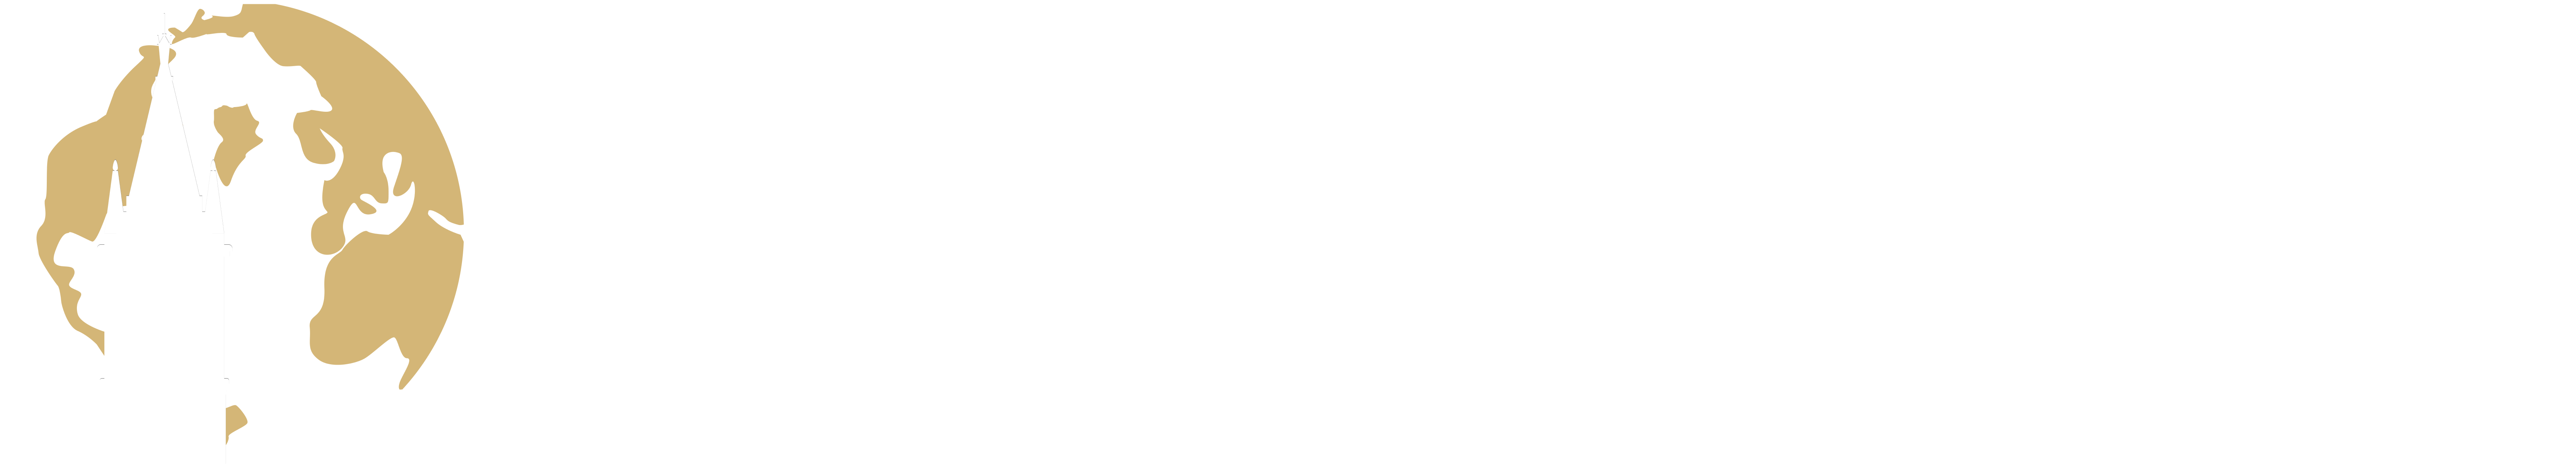 Blum Center for Developing Economies Logo